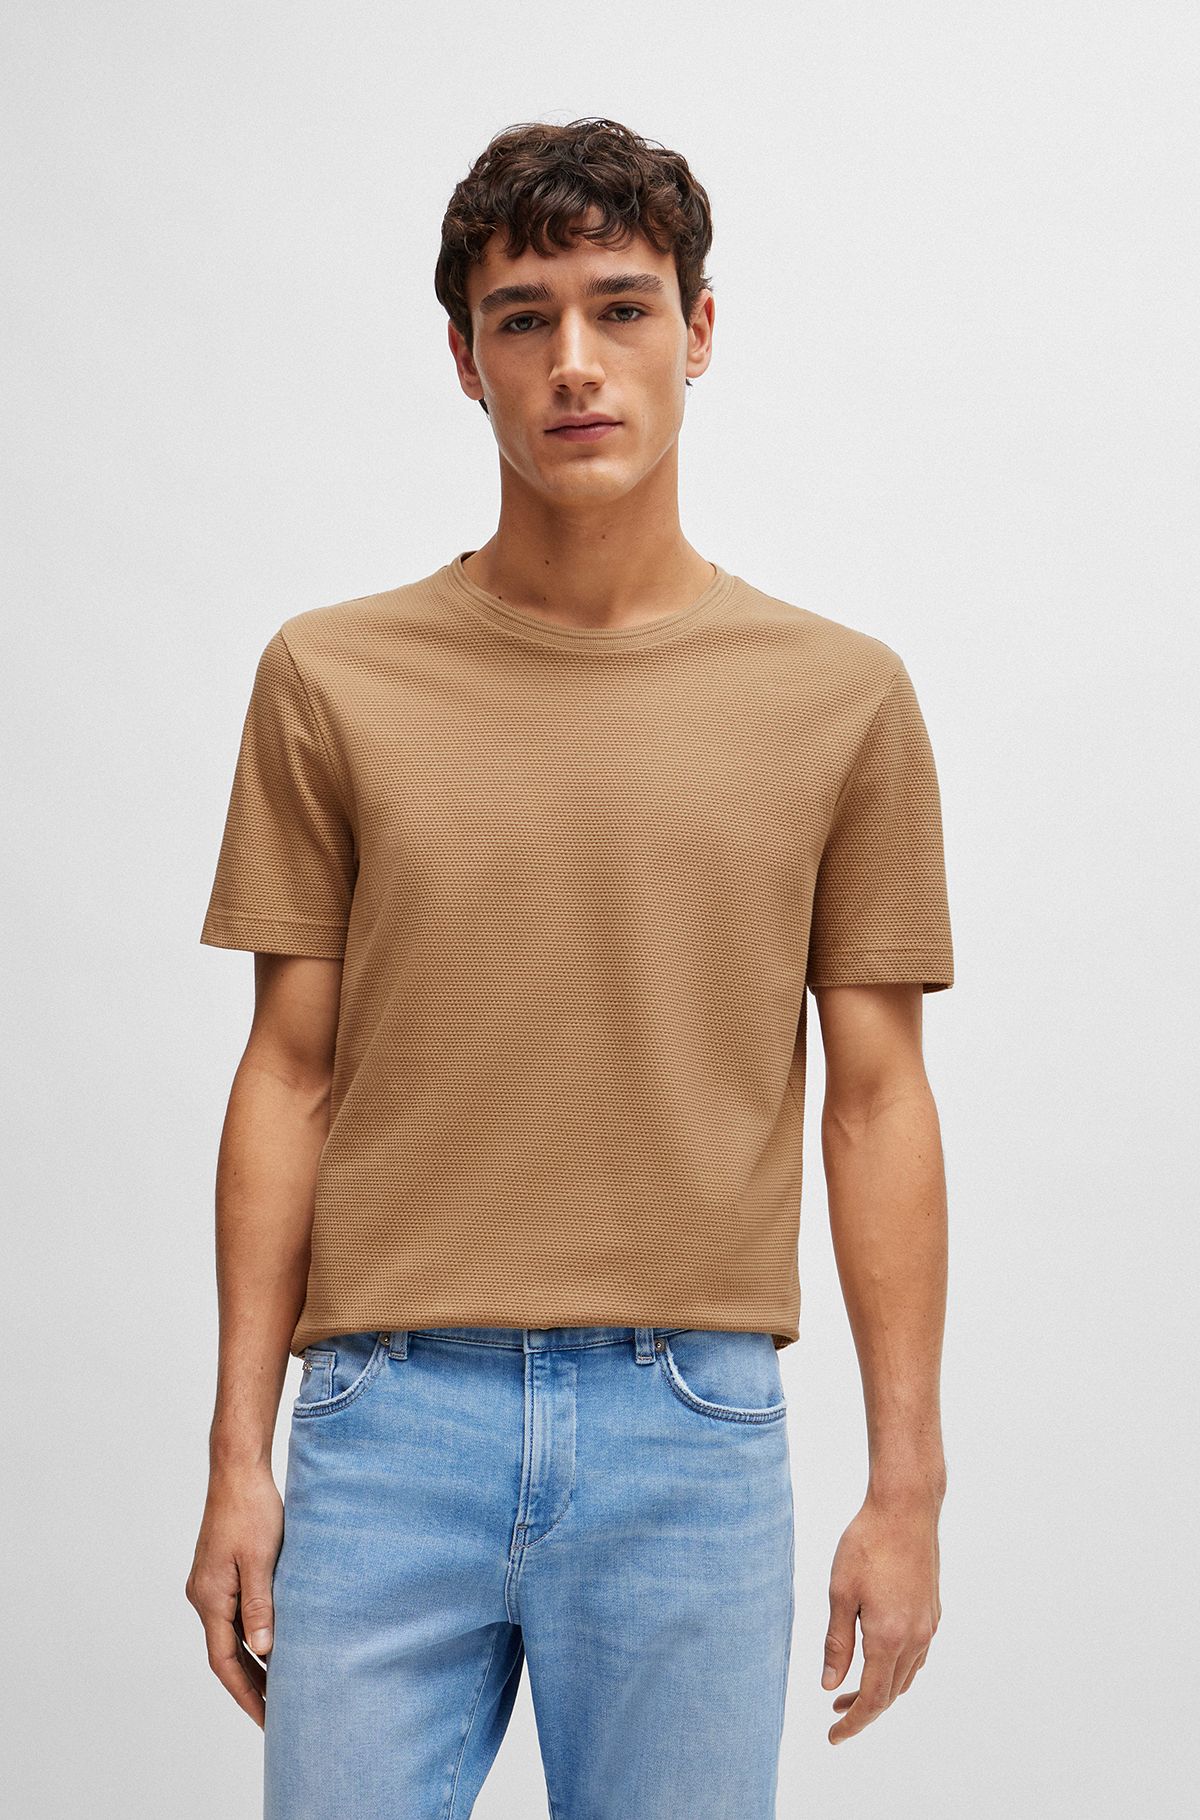 Cotton-blend T-shirt with bubble-jacquard structure, Beige